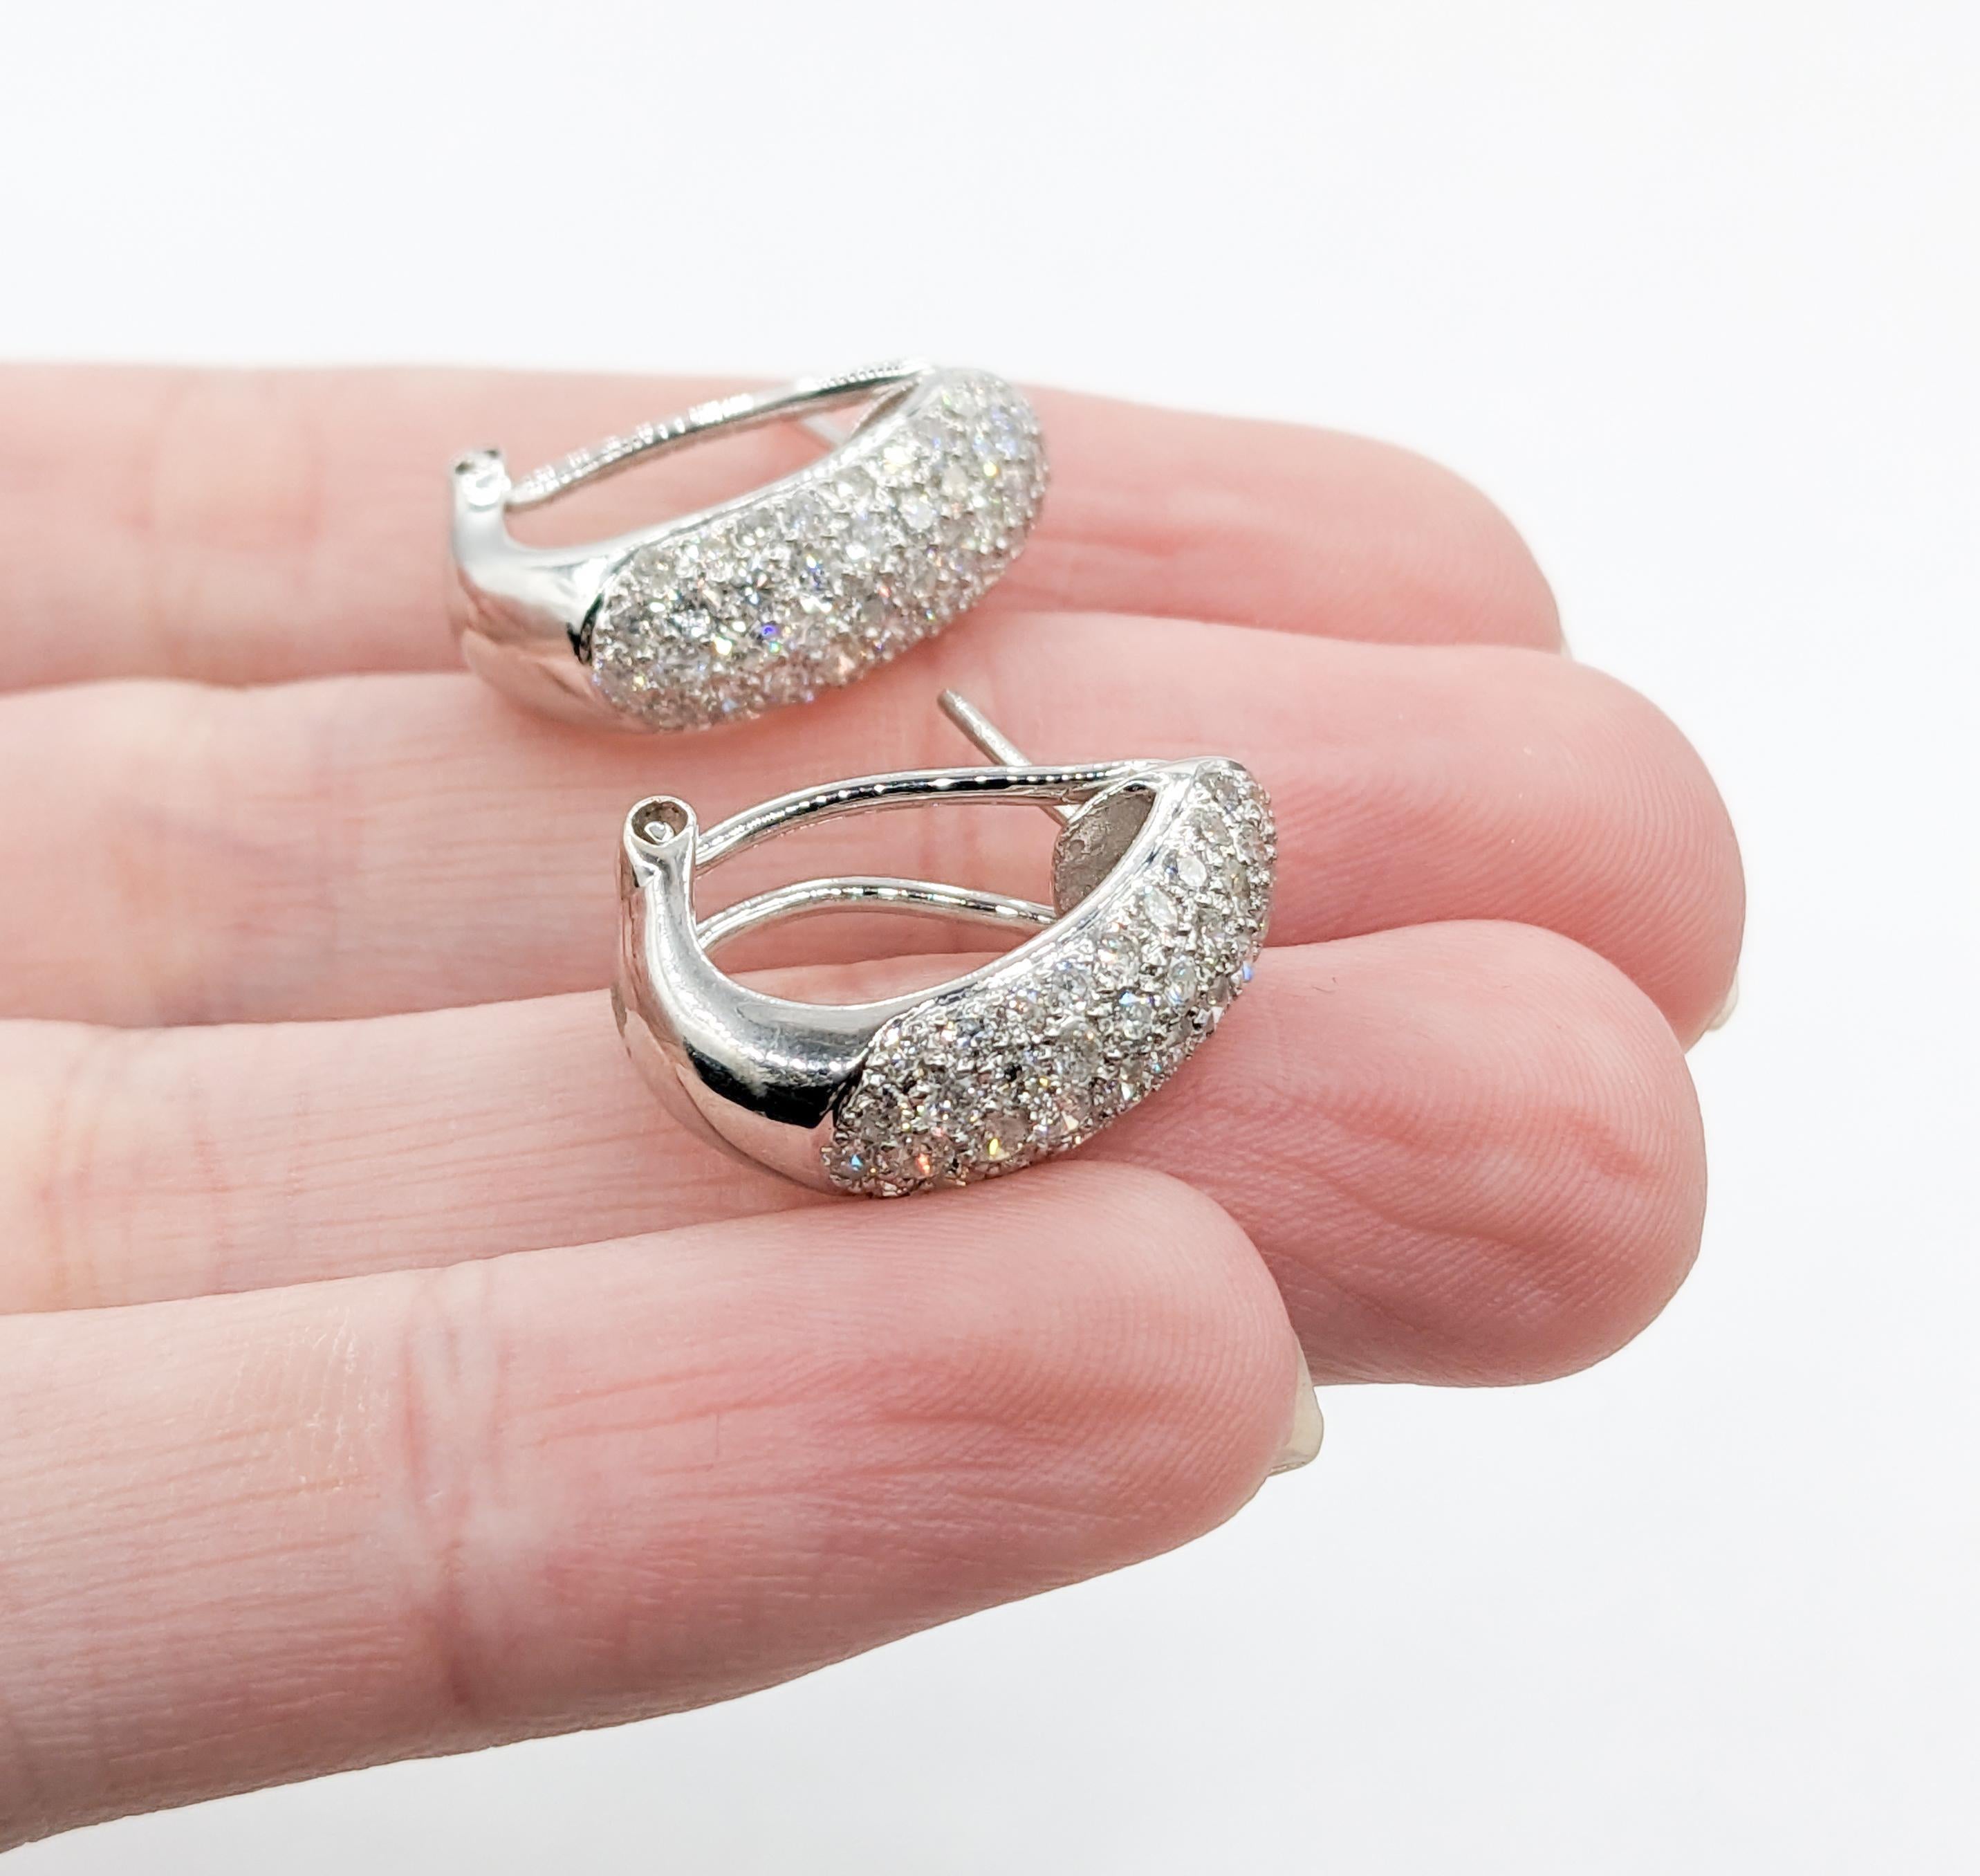 Vintage Pave 2ctw Diamond Huggie Hoops en or blanc

Voici ces exquises boucles d'oreilles Half Hoop Huggie Style, incrustées de diamants étincelants. Réalisées en or blanc 18 carats, elles présentent un ensemble de diamants ronds de 2,00 carats qui